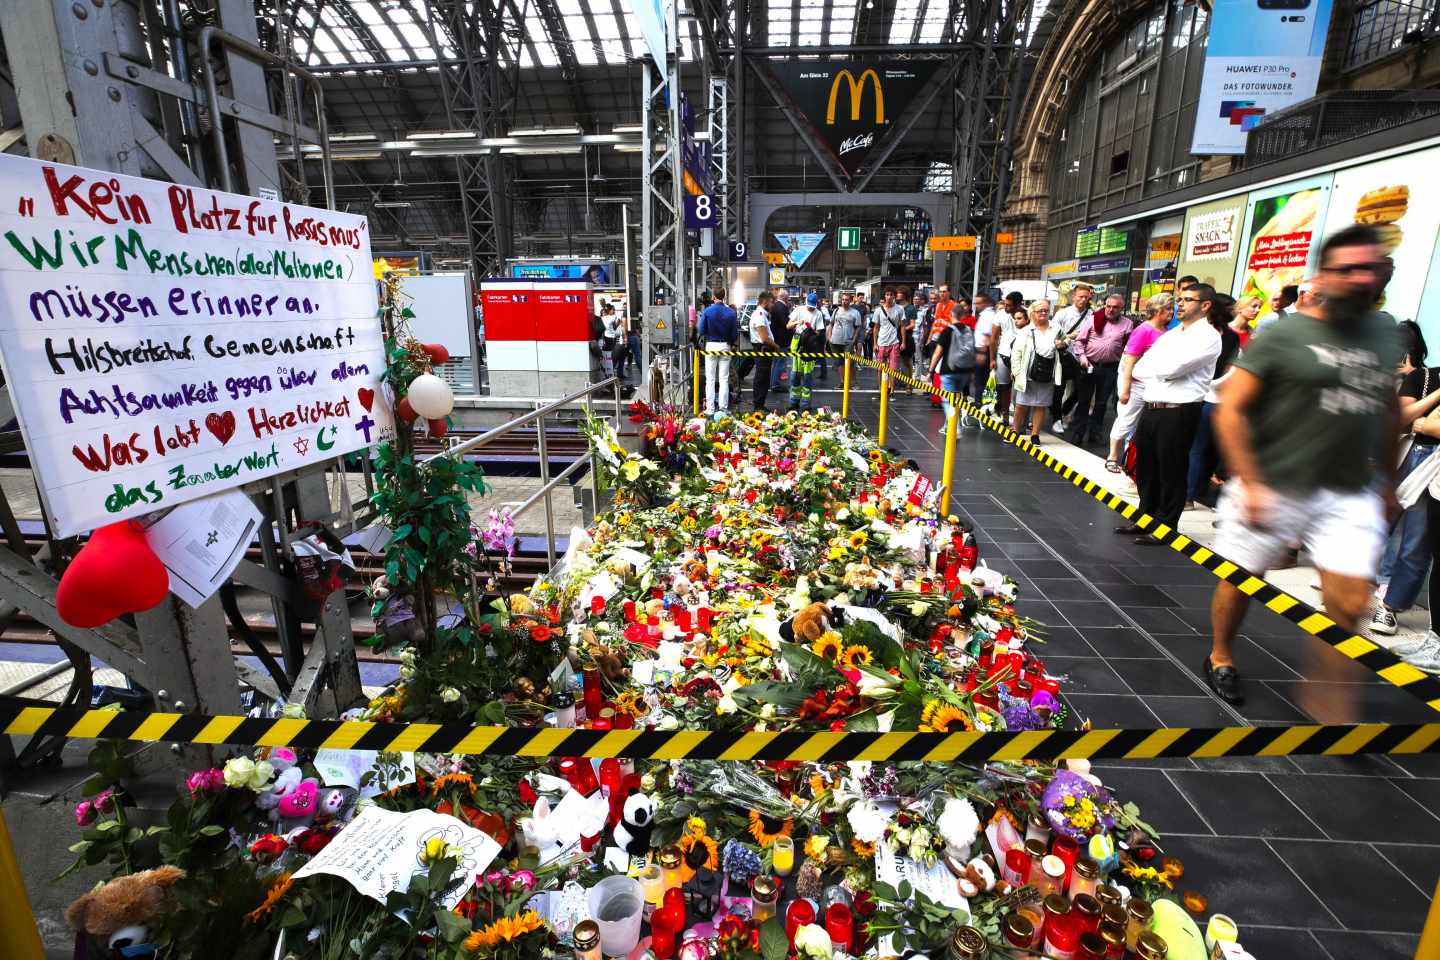 Flores, peluches y velas rinden homenaje al niño empujado a la vía del tren en Fráncfort.